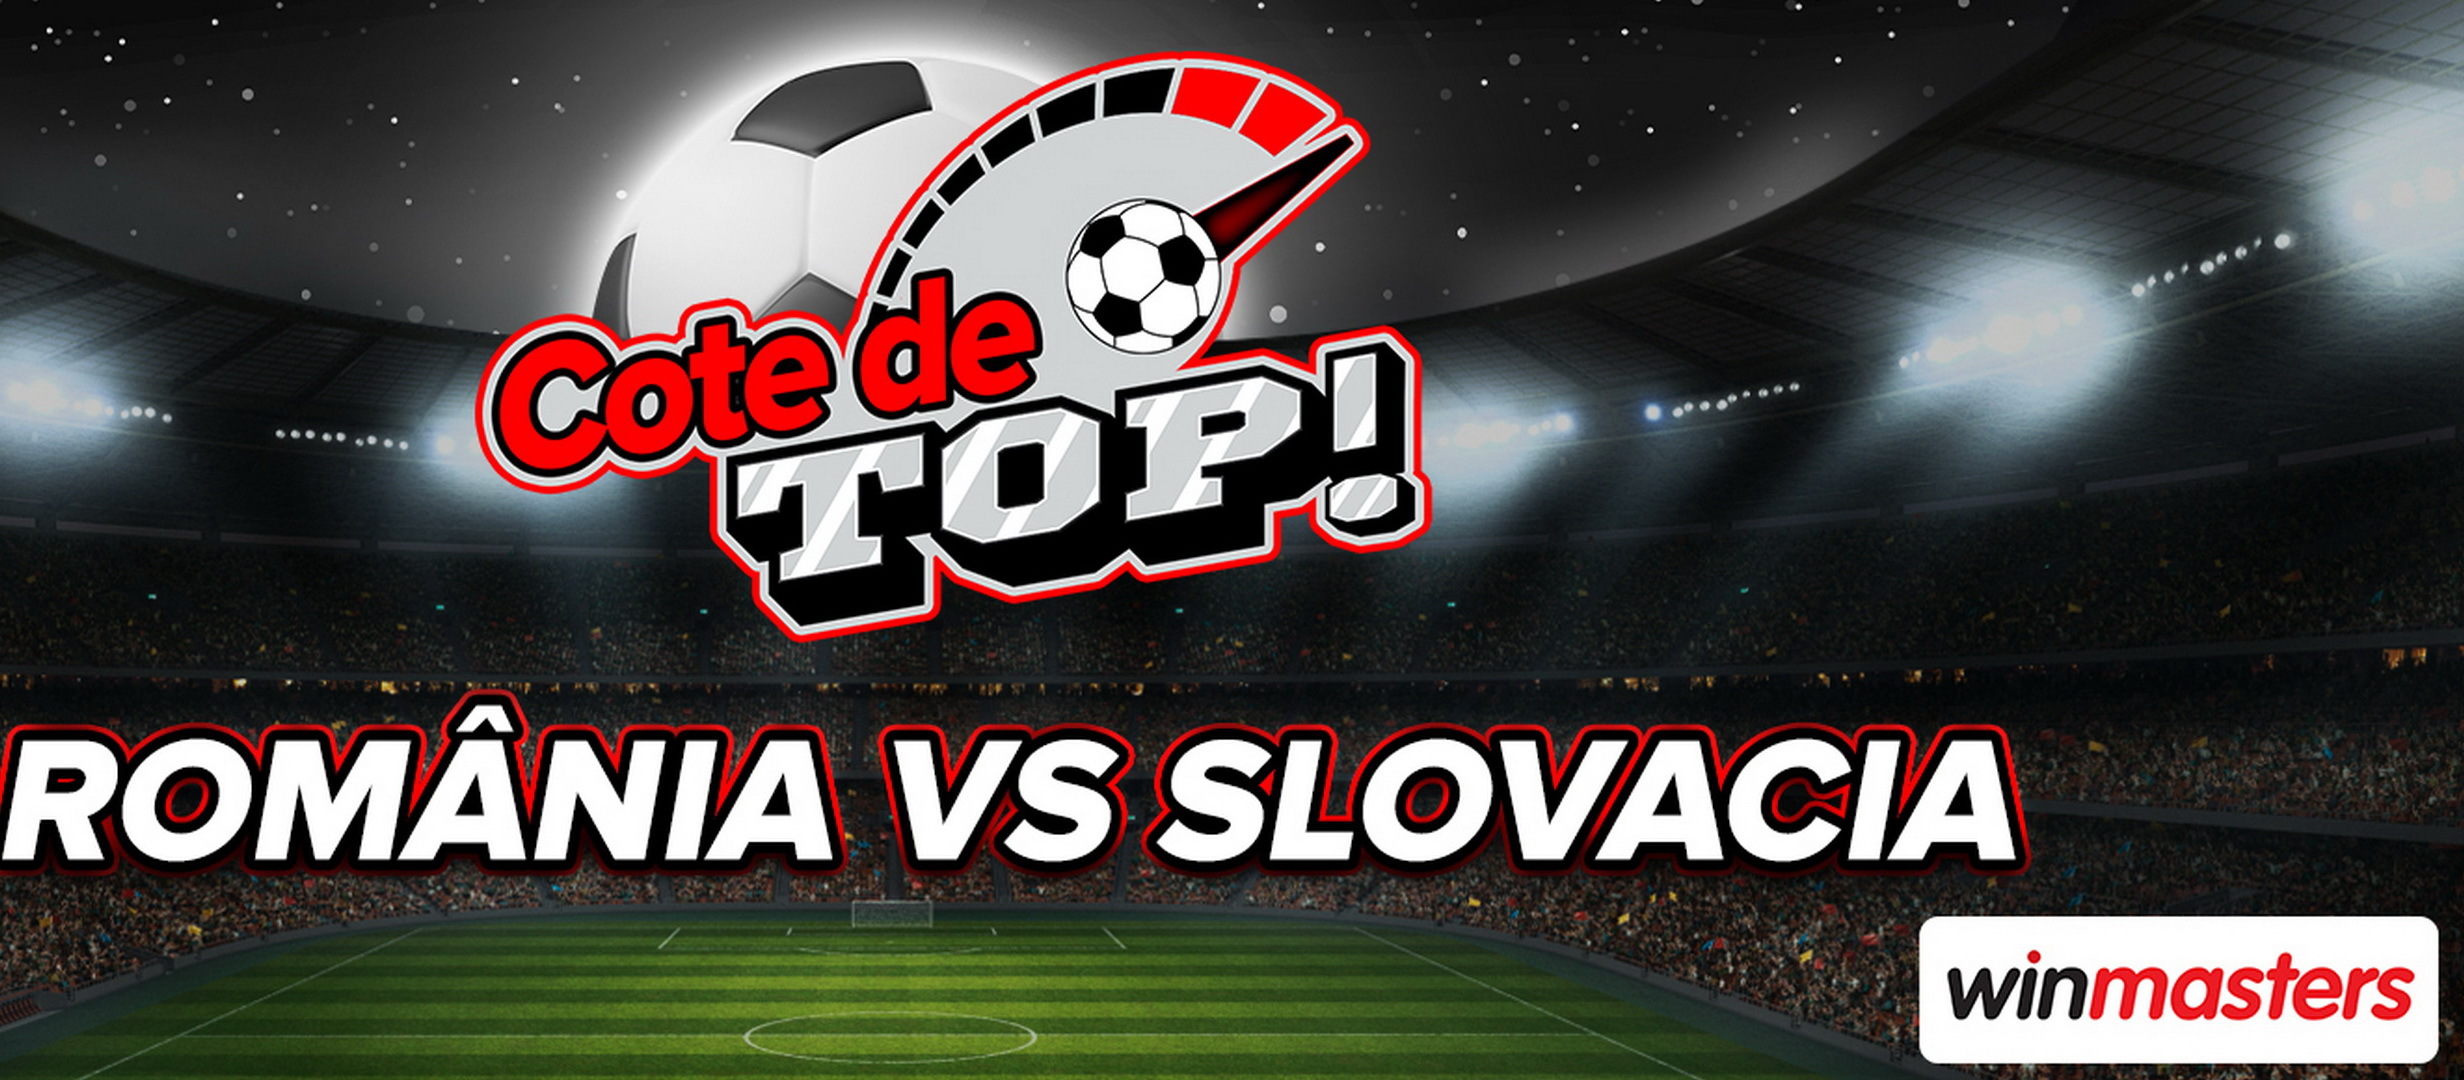 Slovacia vs. România: Cotă fabuloasă la Winmasters pentru un gol marcat cu capul de Drăgușin!